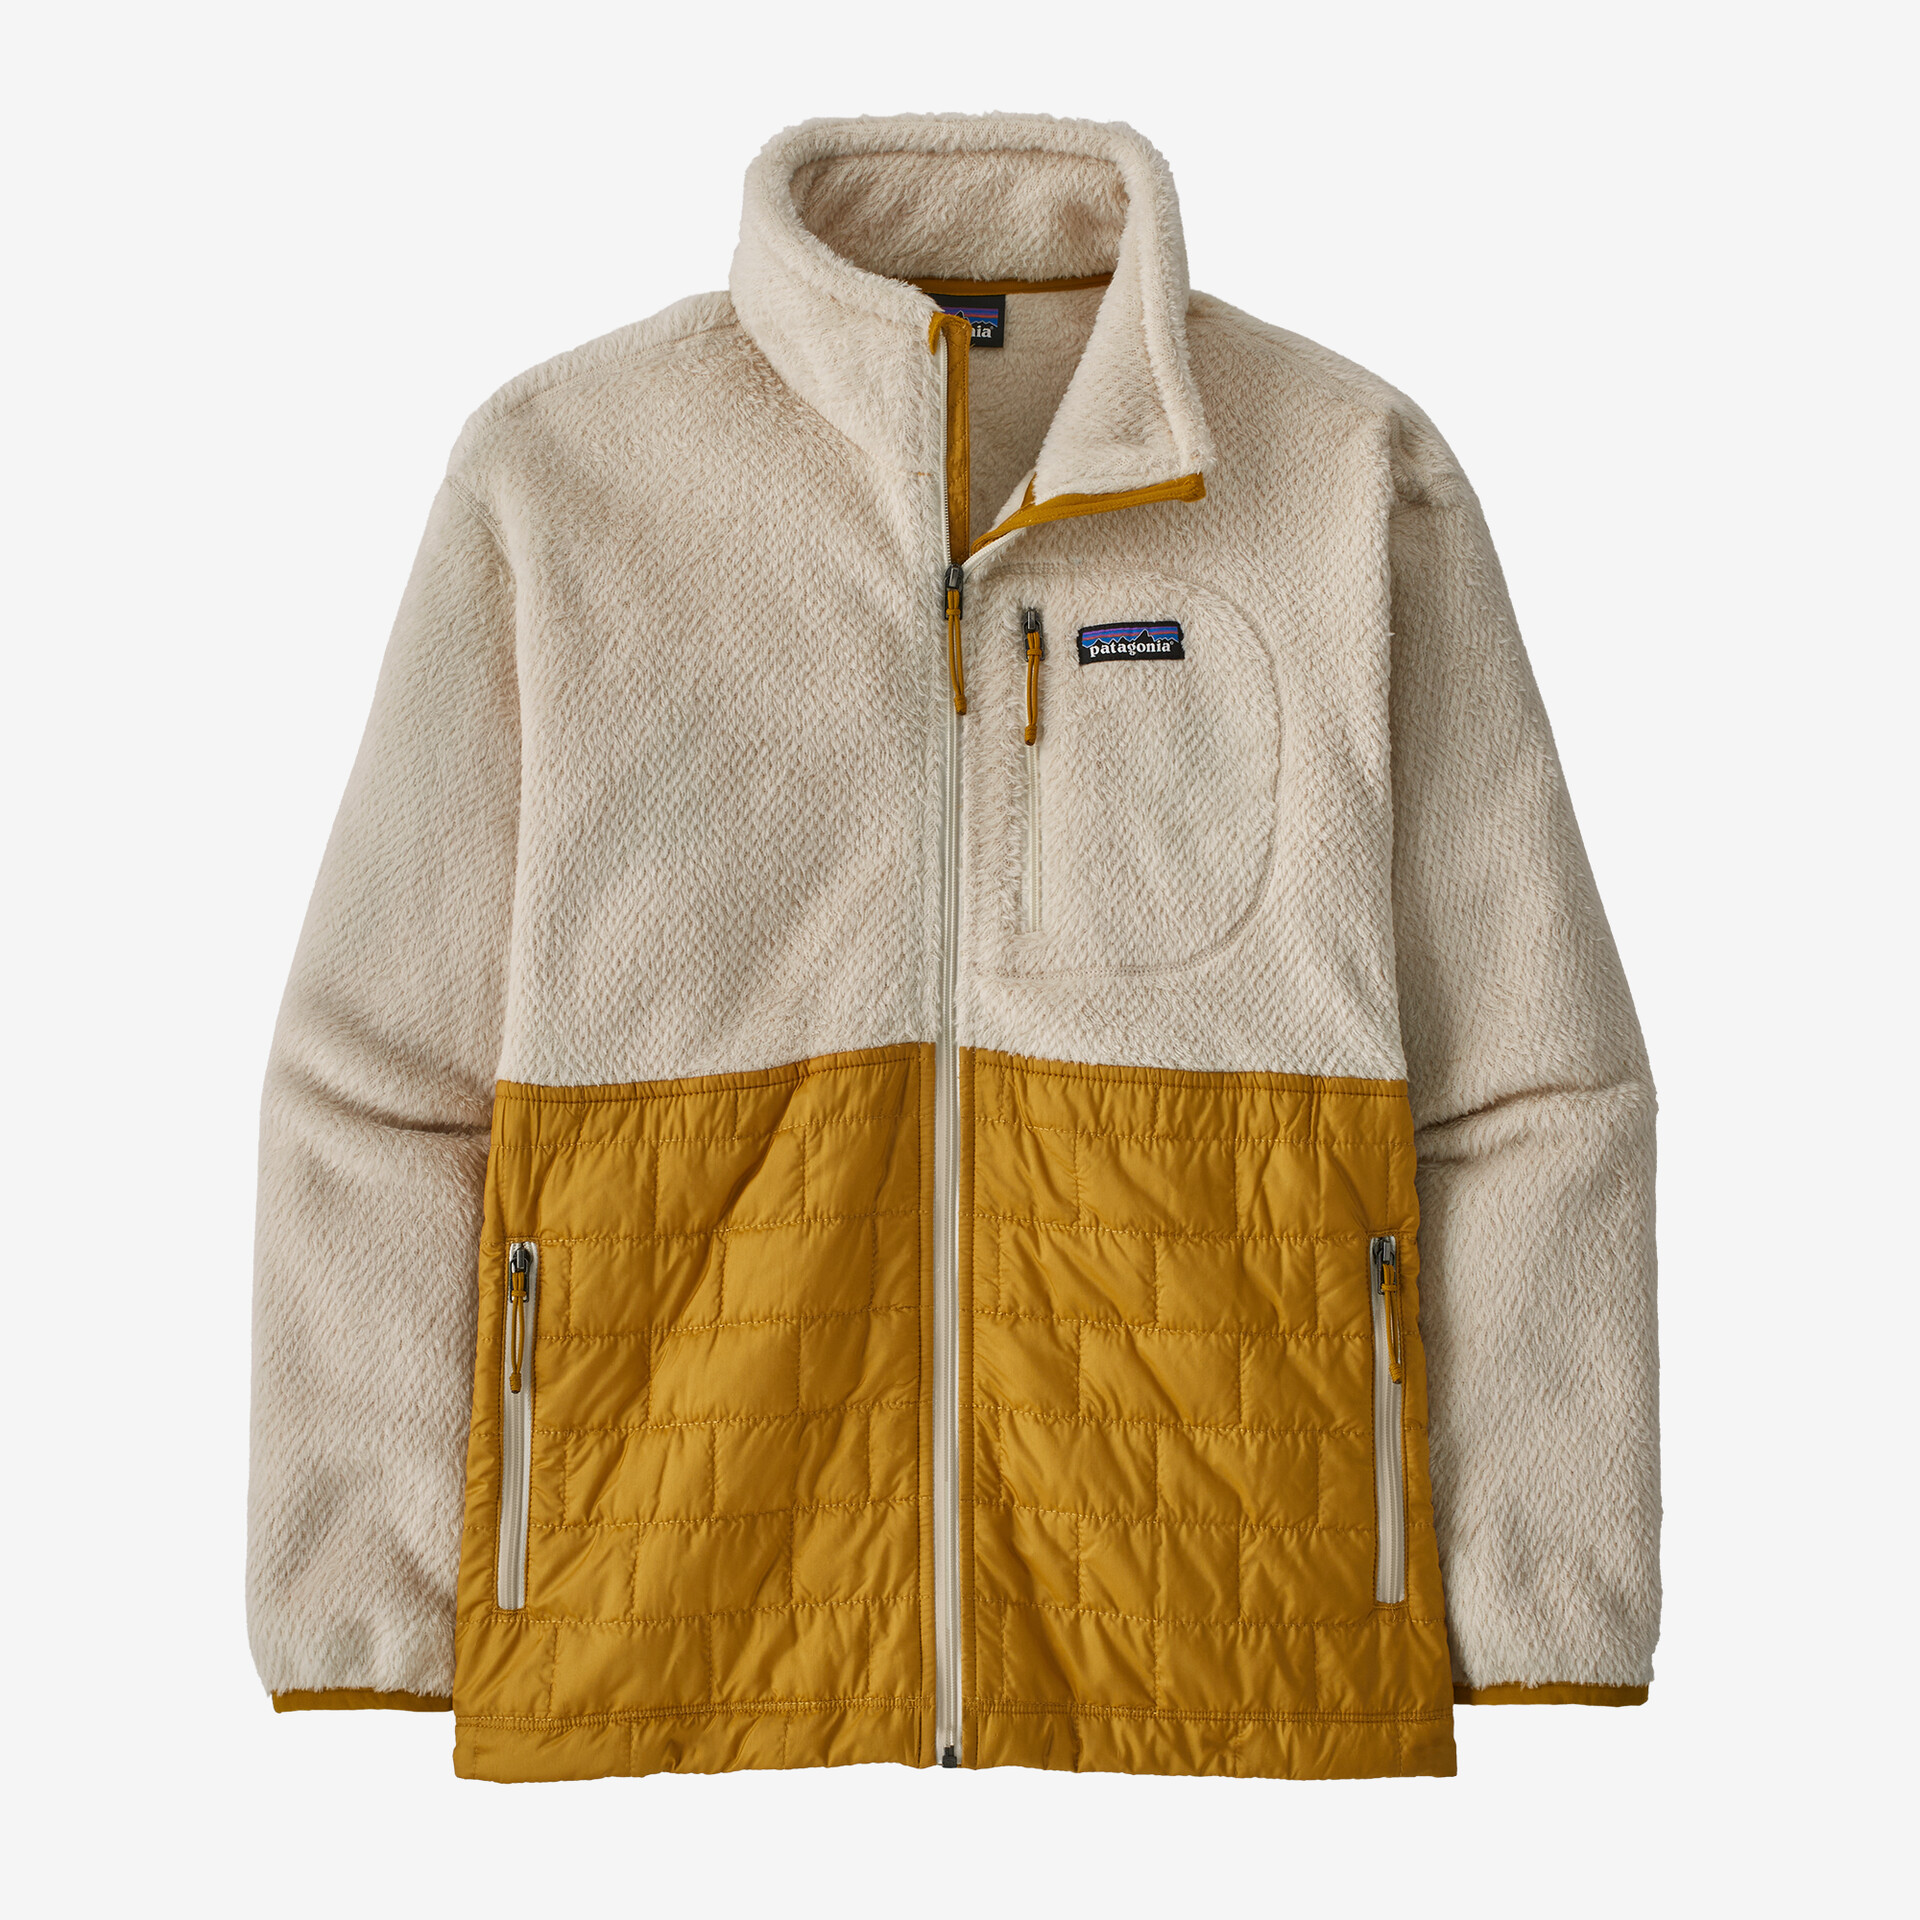 Женская гибридная куртка Re-Tool Patagonia, цвет Dark Natural цена и фото